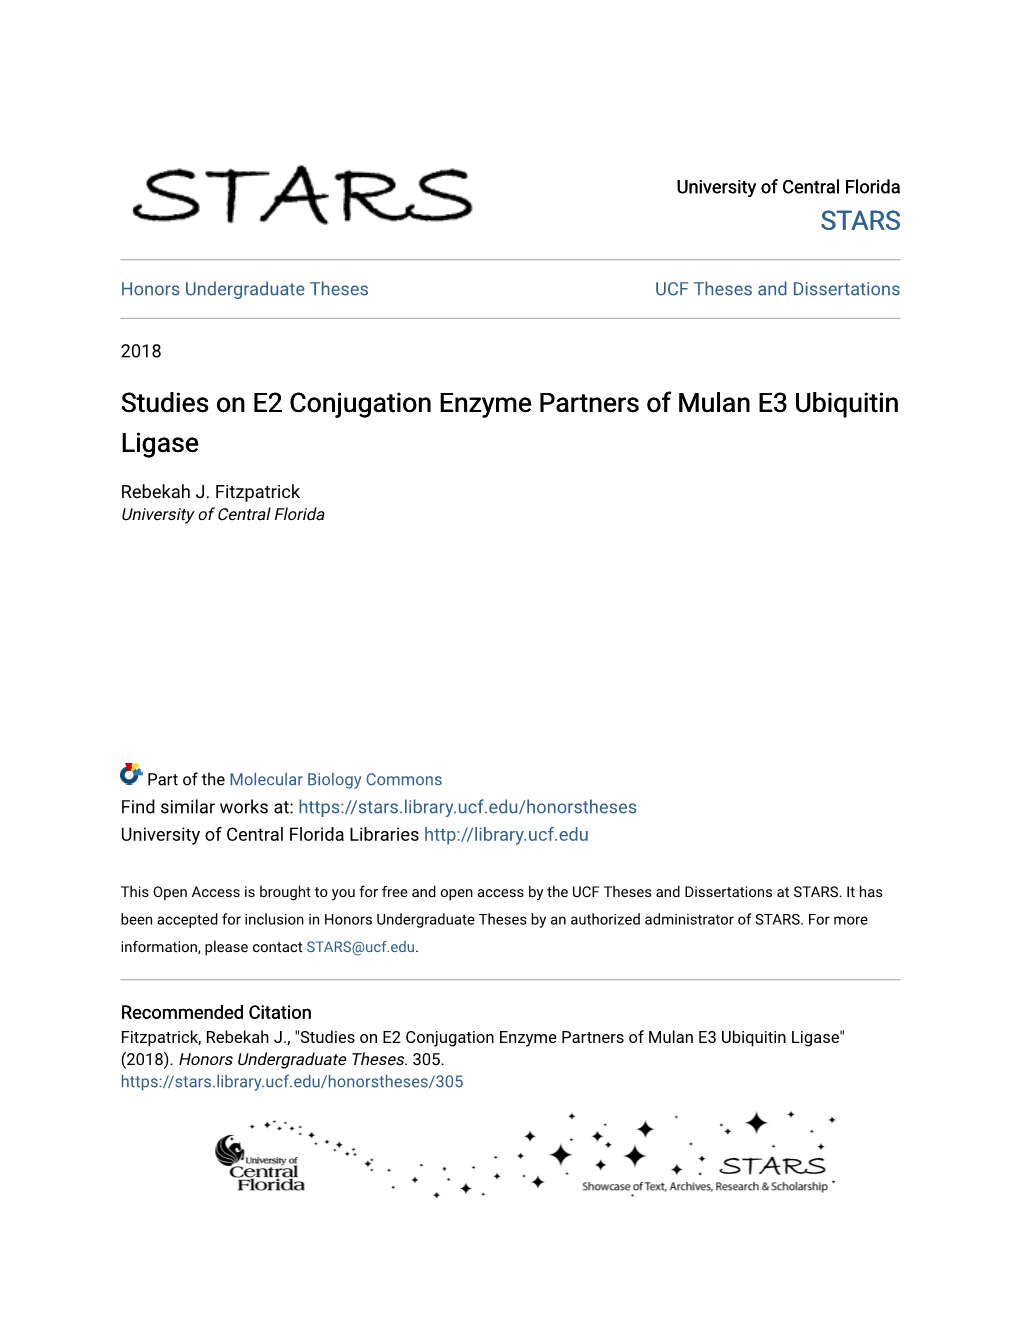 Studies on E2 Conjugation Enzyme Partners of Mulan E3 Ubiquitin Ligase